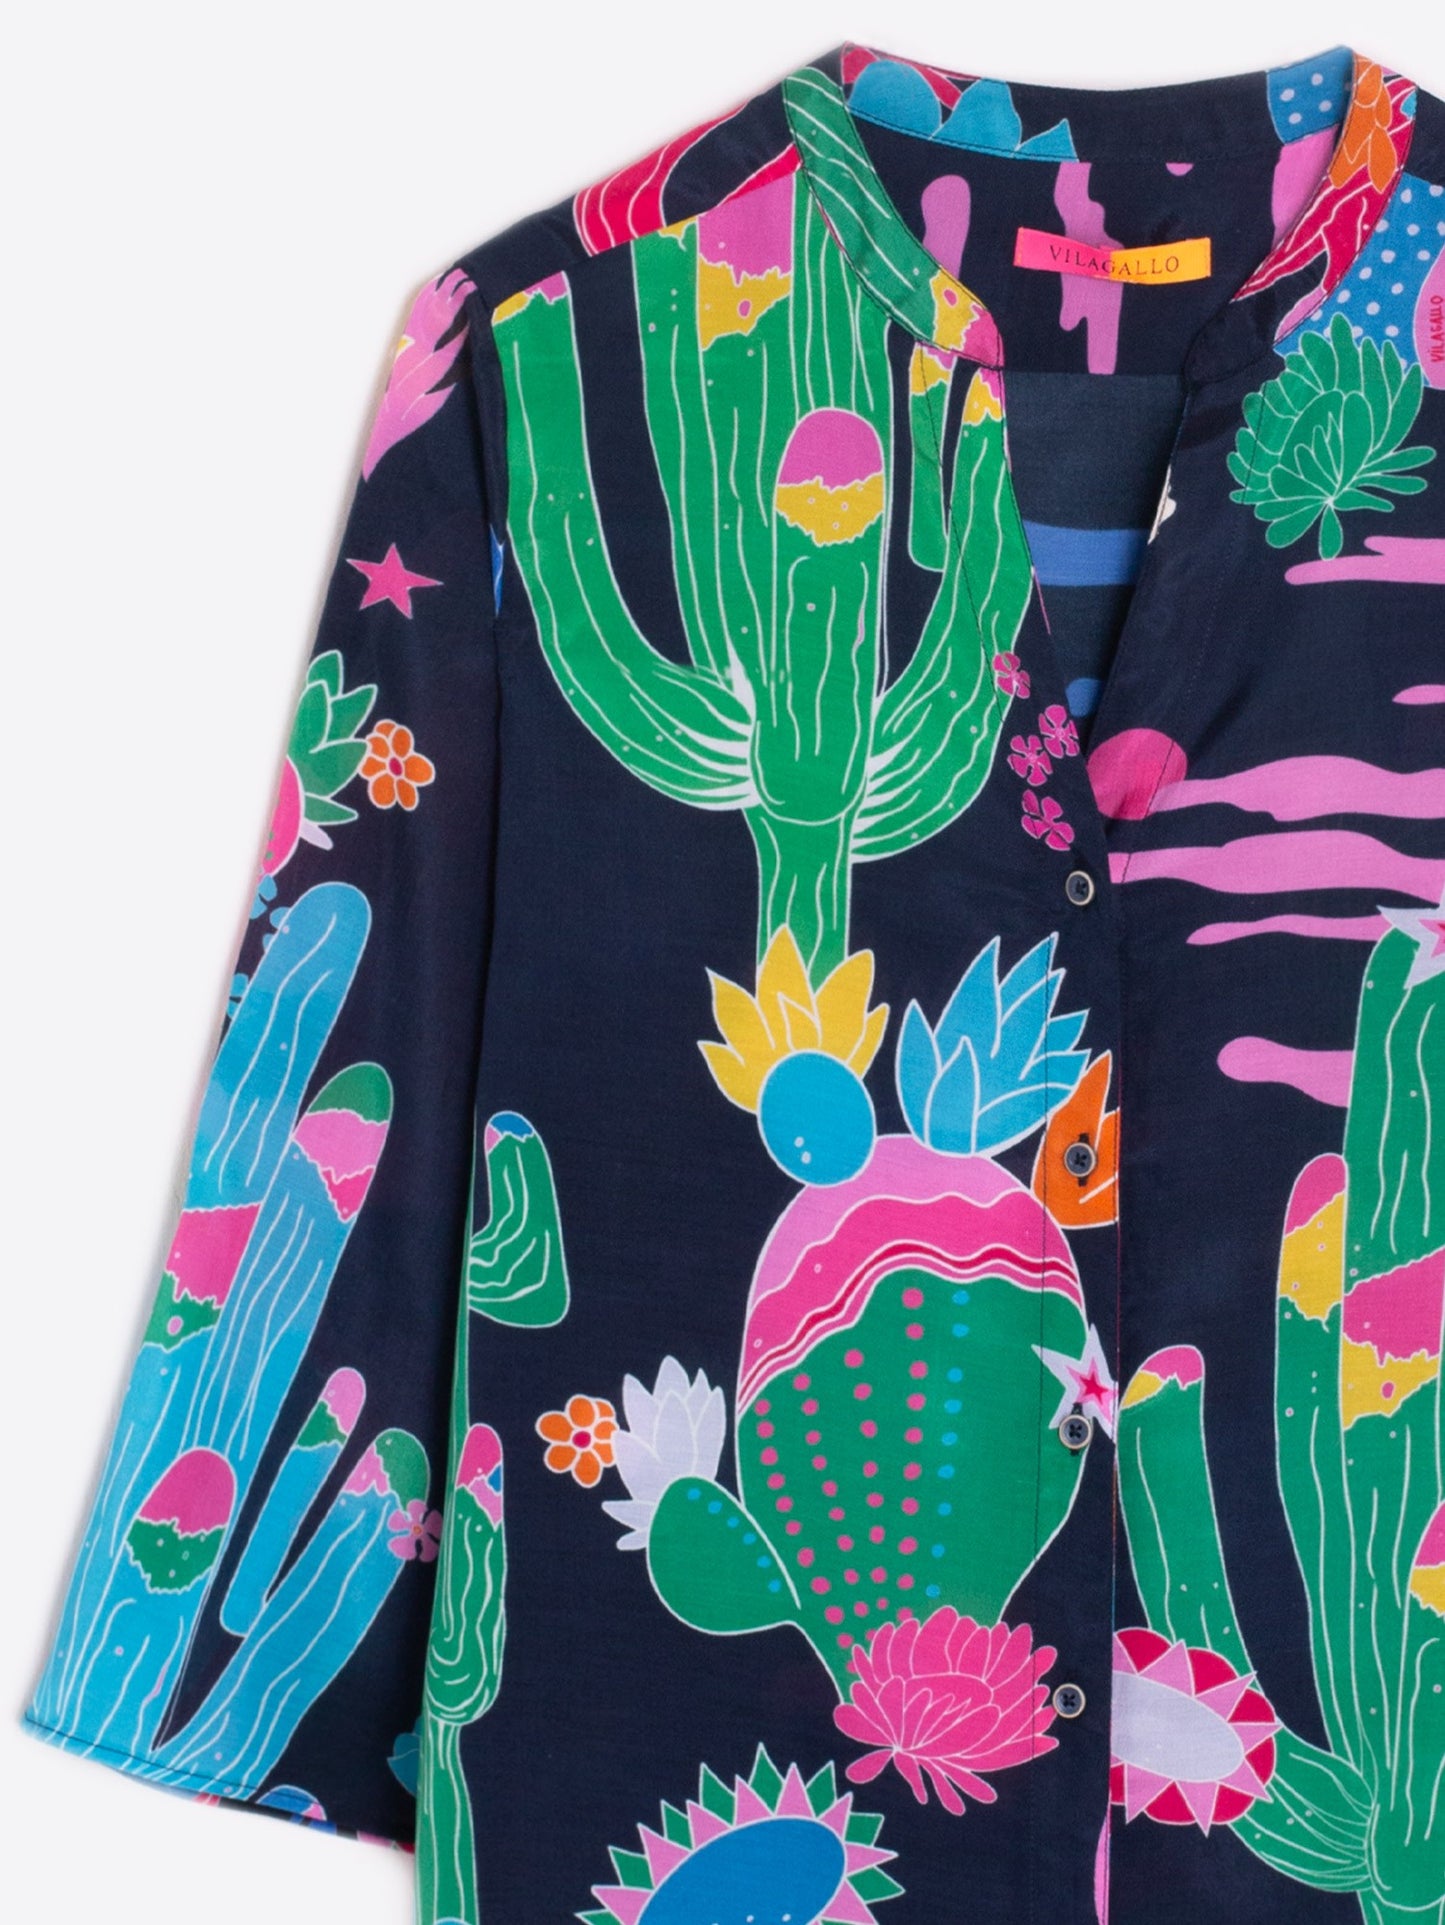 Juliet Shirt in Cactus Navy Print